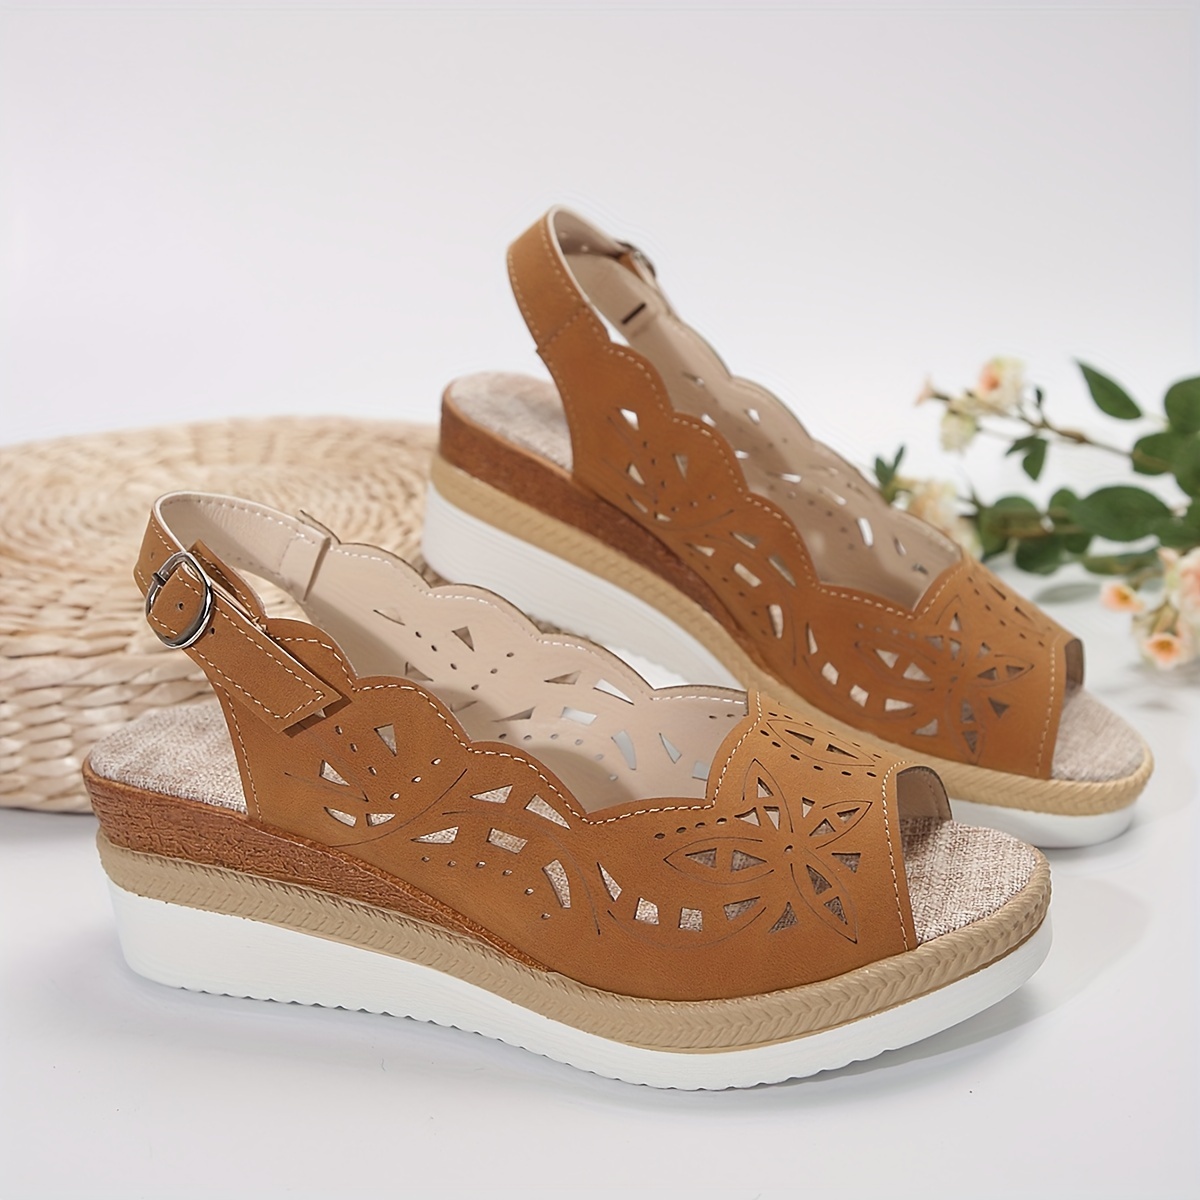 floral hollow sandals women s ankle buckle strap platform detalles 3